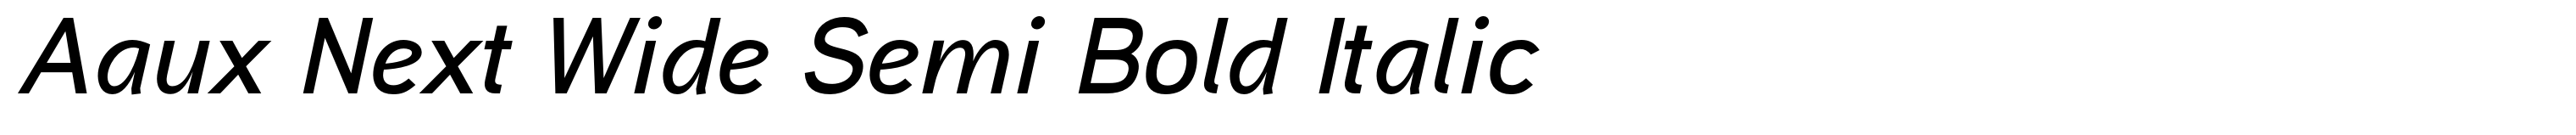 Aaux Next Wide Semi Bold Italic